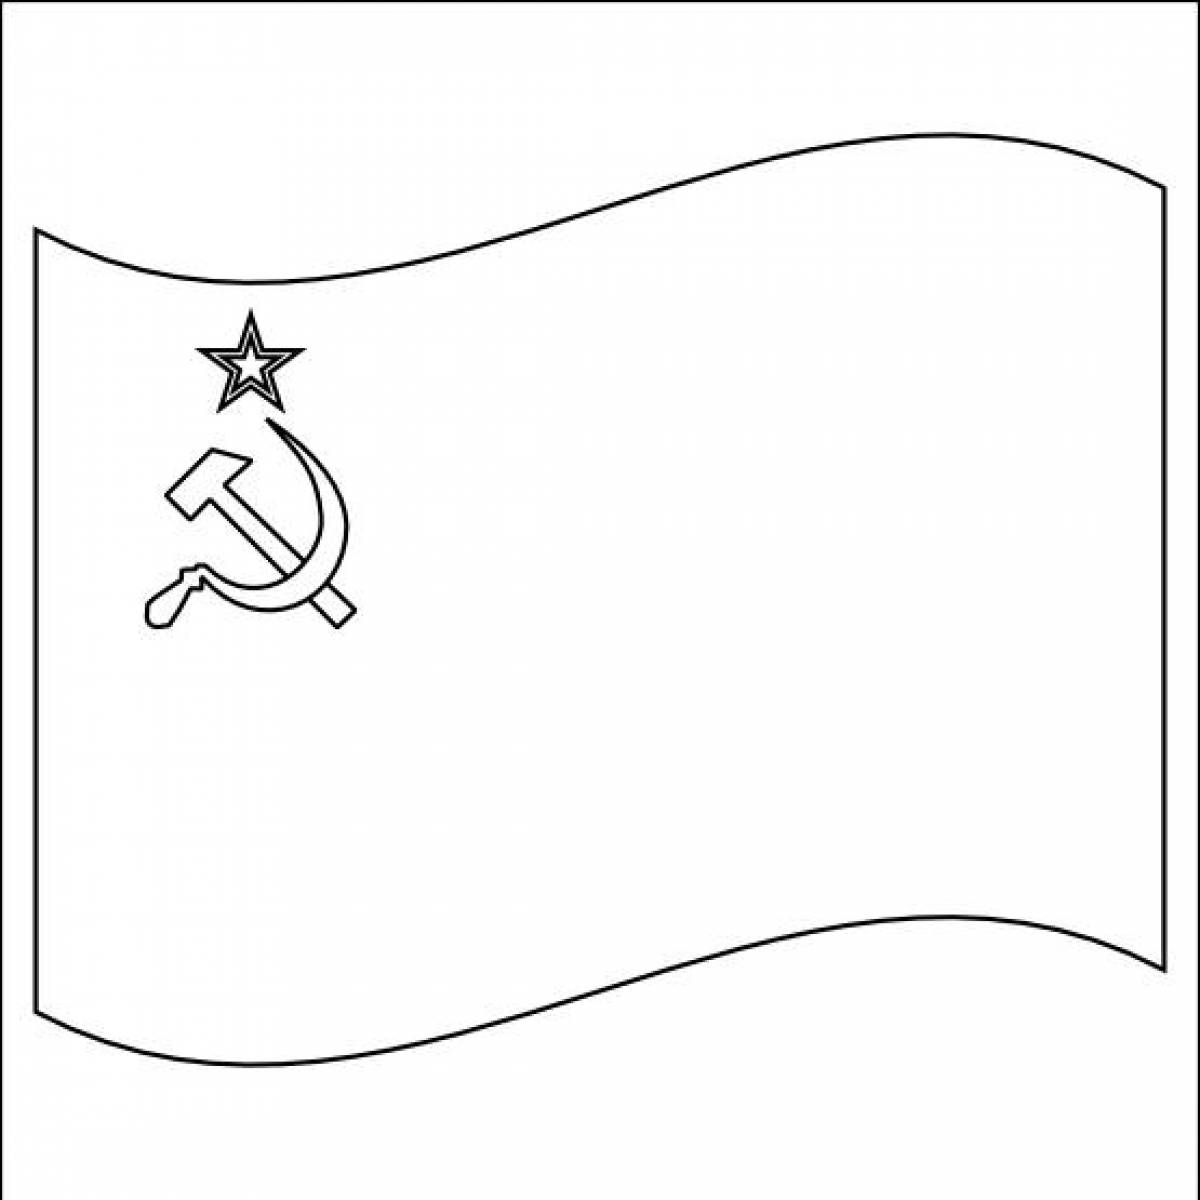 Открытки на 23 распечатать. Флаг раскраска. Флаг СССР раскраска. Флаг раскраска для детей. Флаг СССР контур для раскрашивания.